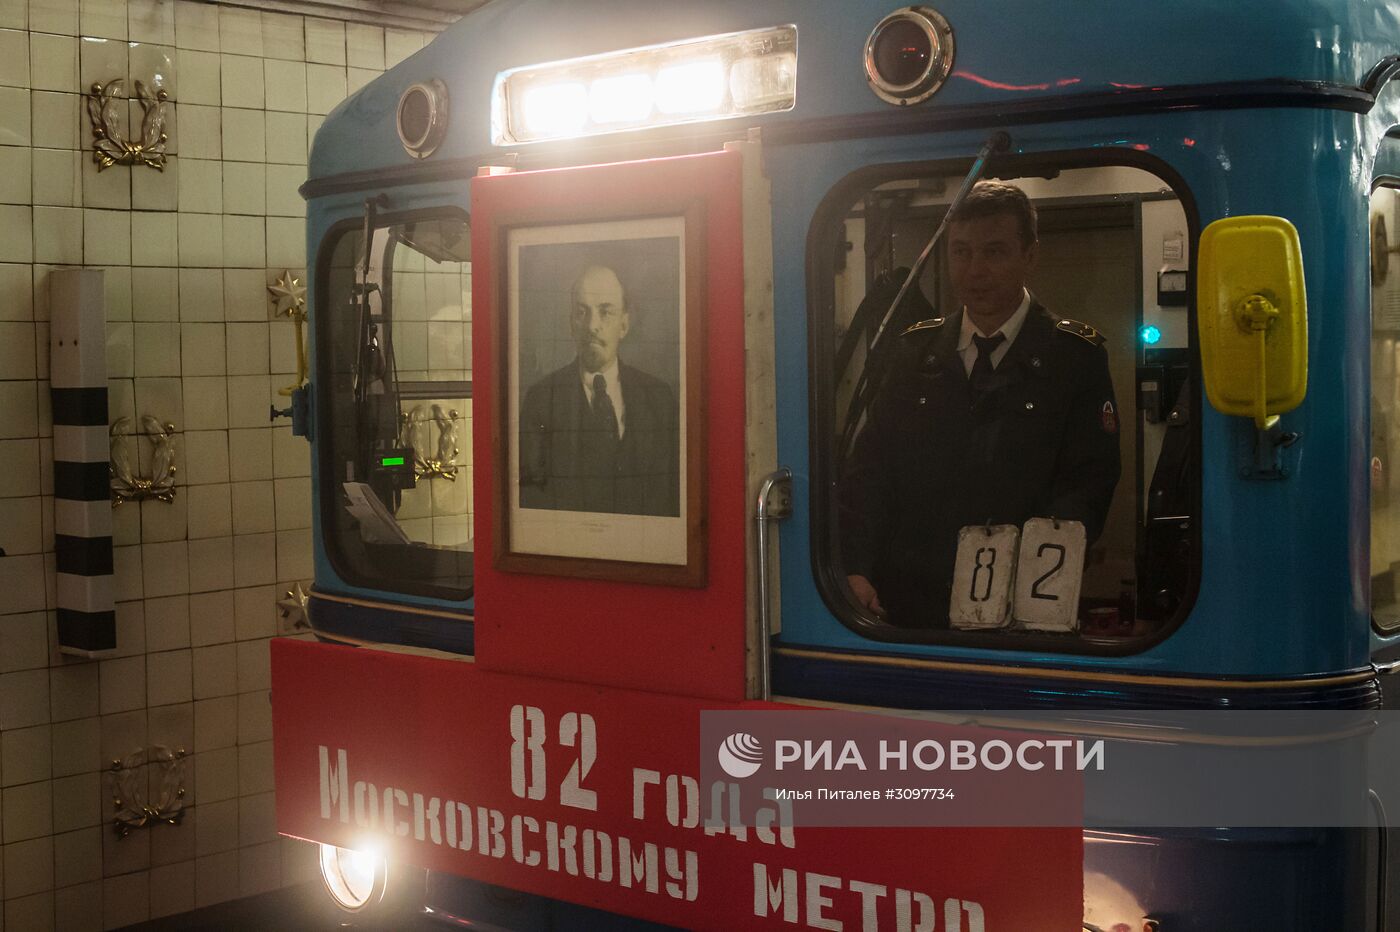 Парад поездов на Кольцевой линии Московского метрополитена